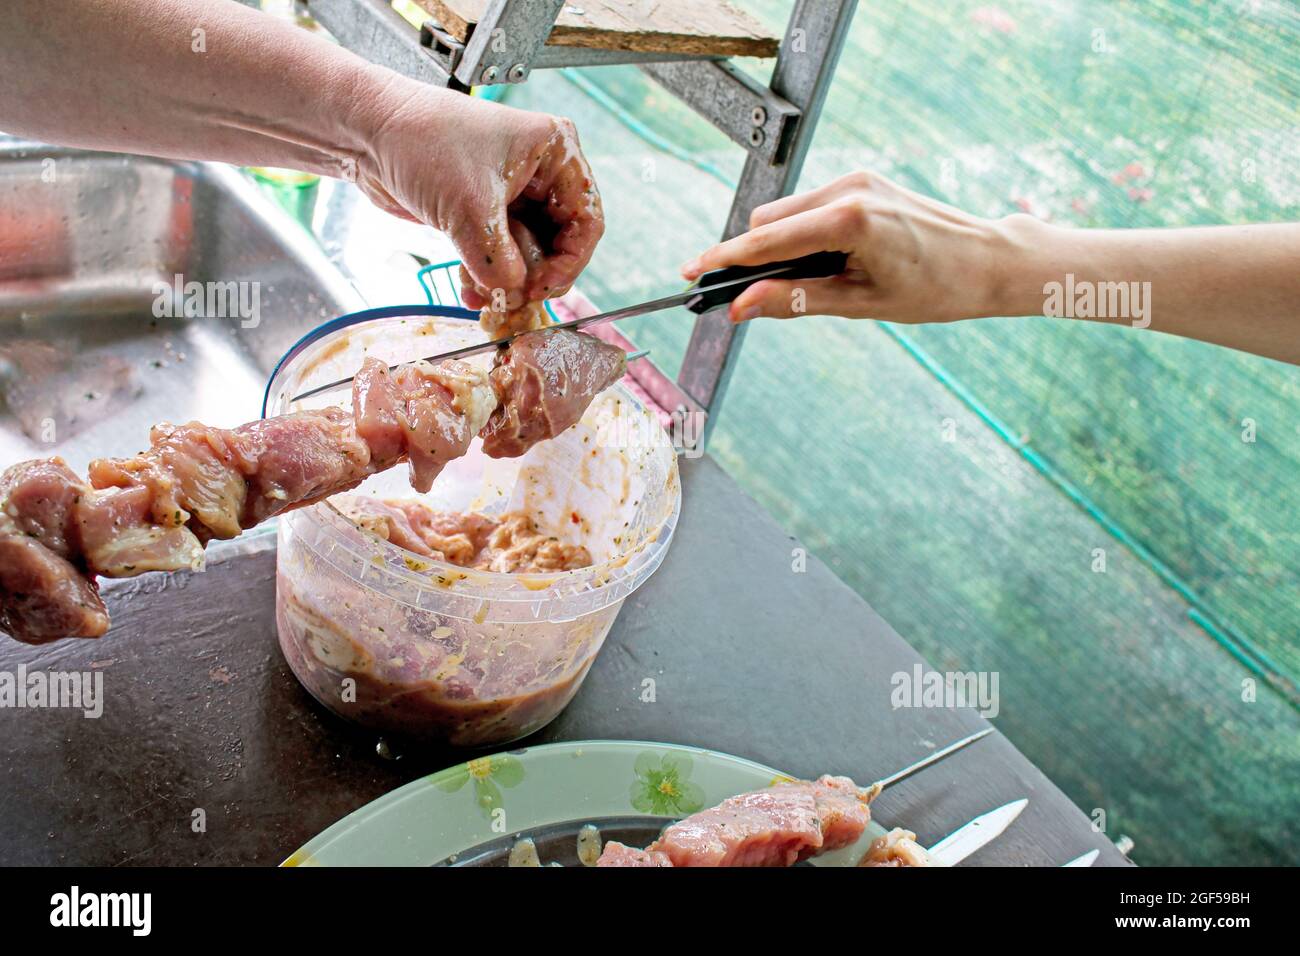 Une femme s'accroche à de la viande juteuse sur une brochette. Barbecue de cuisine dans la nature Banque D'Images